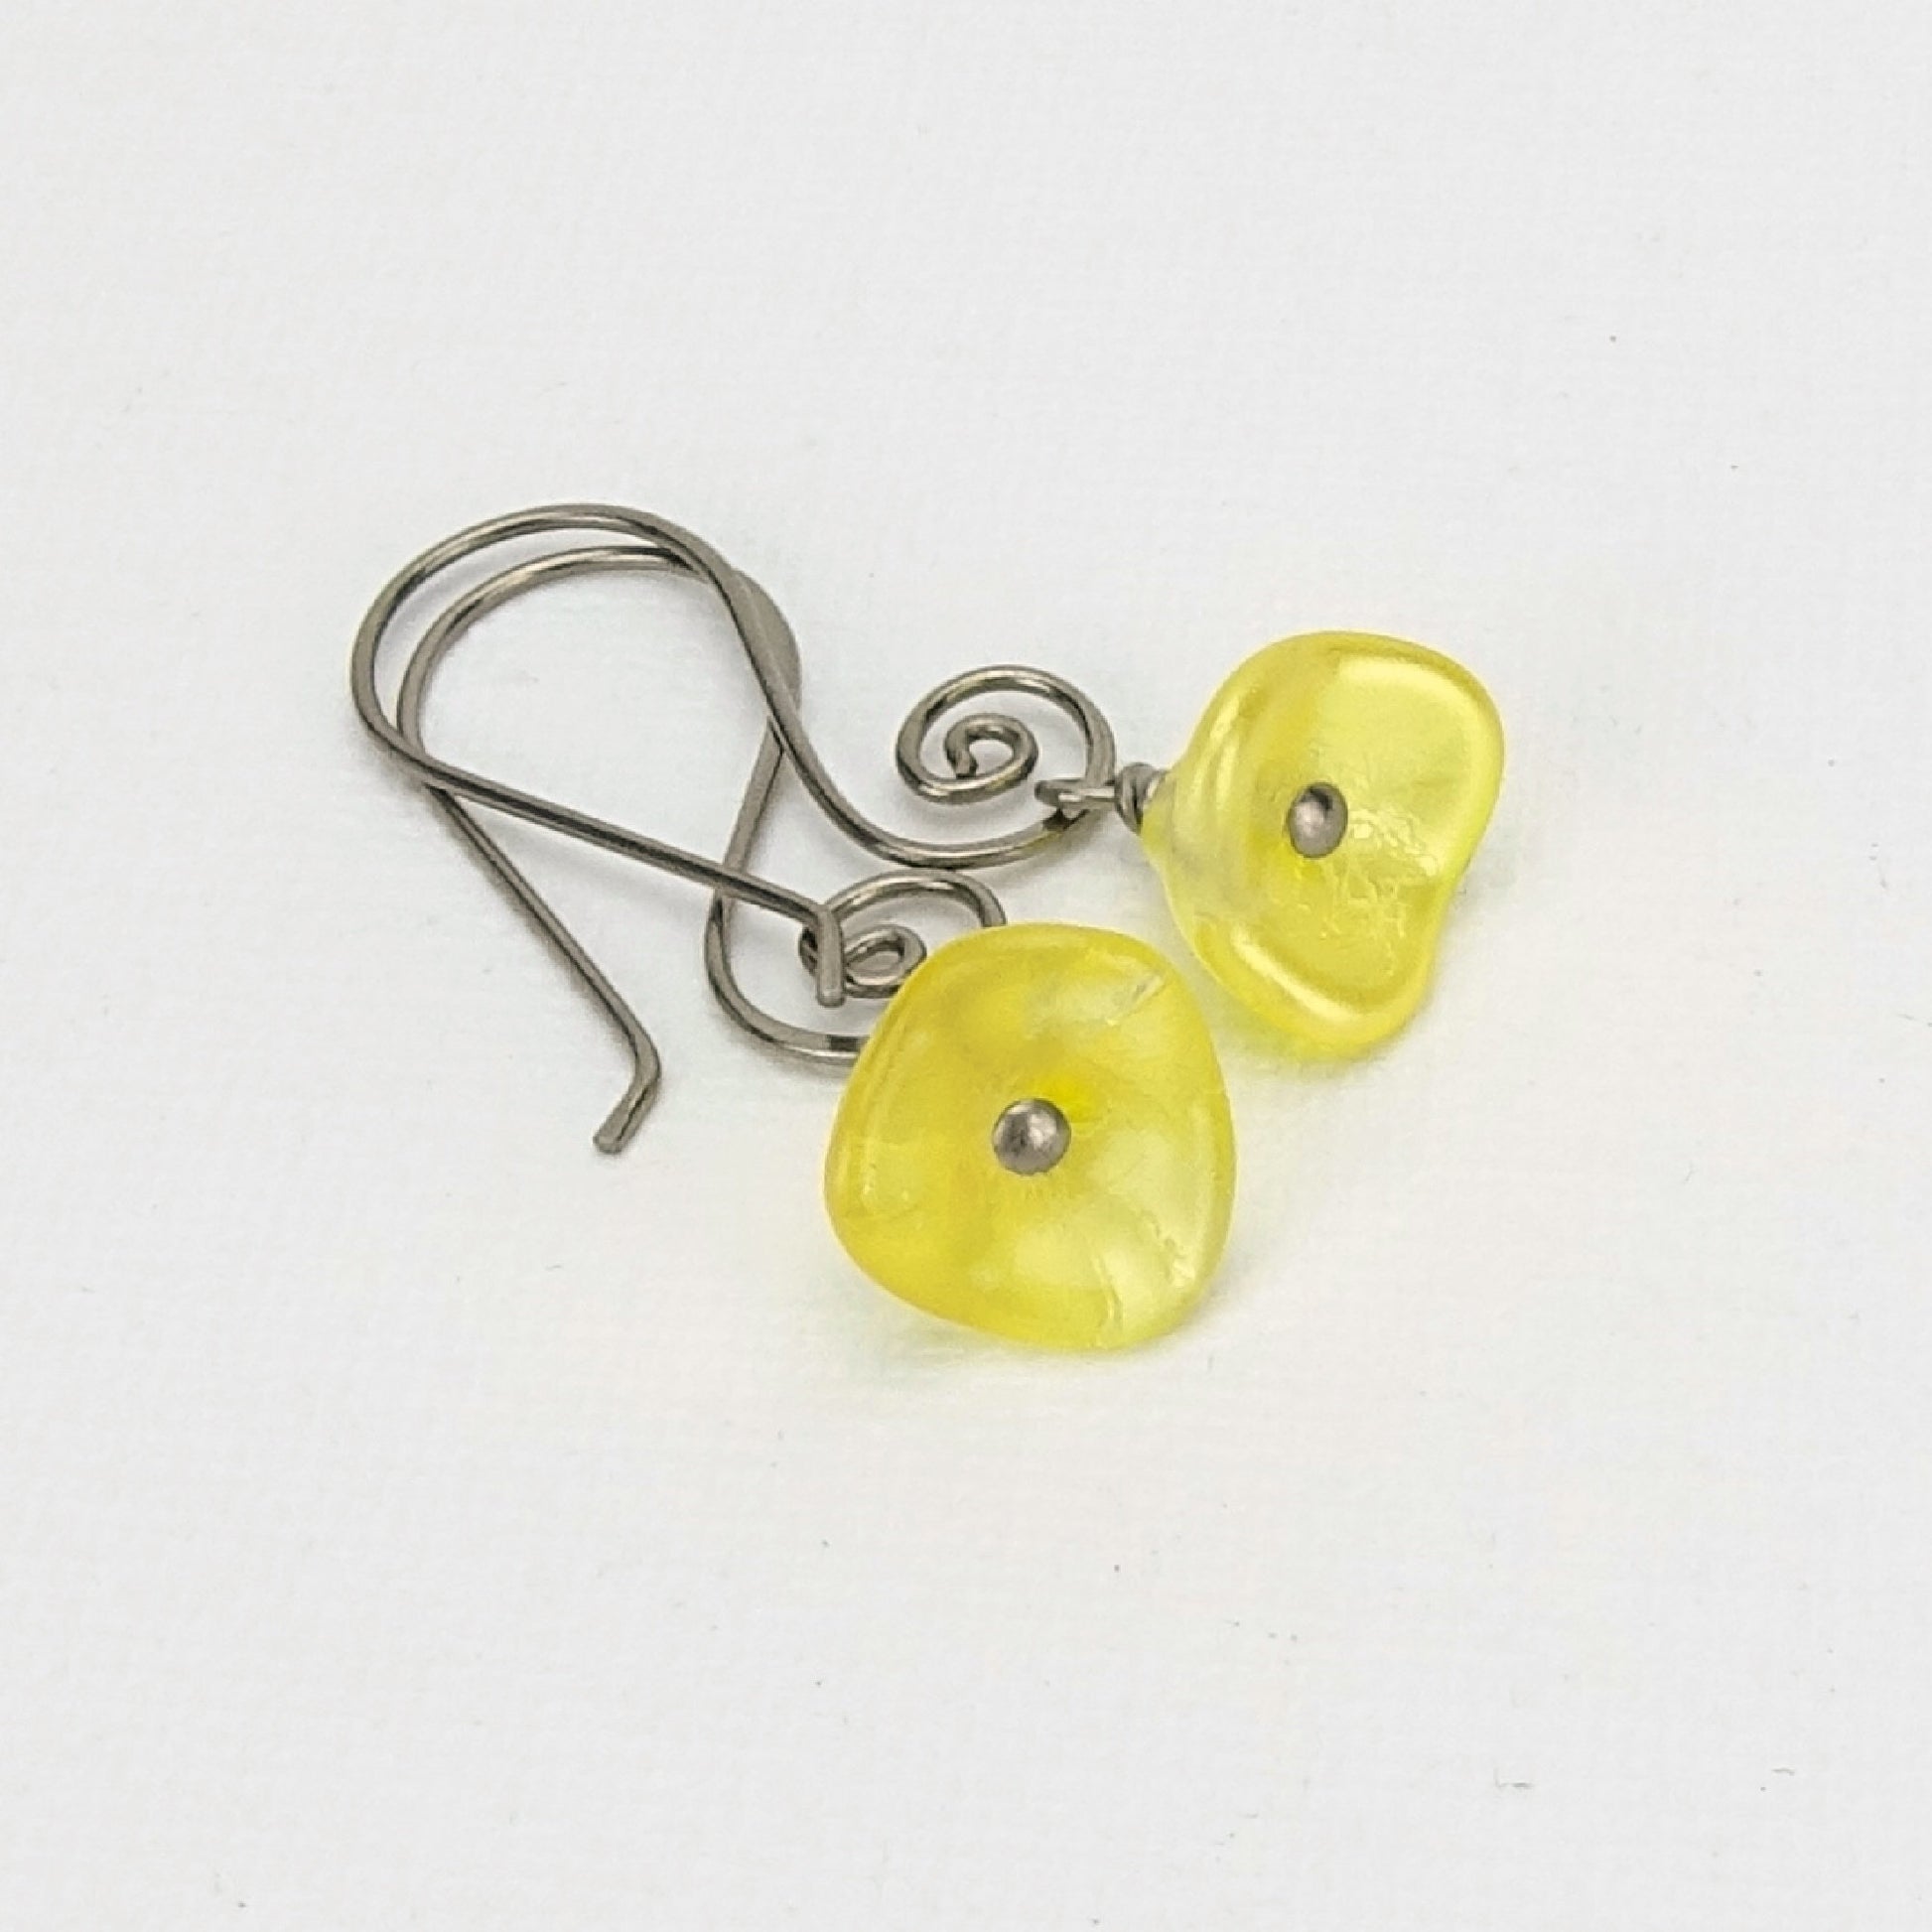 Buttercup Yellow Czech Glass Flowers Niobium Earrings, Swirl Shaped Earwire, Hypoallergenic Nickel Free Titanium Earrings for Sensitive Ears